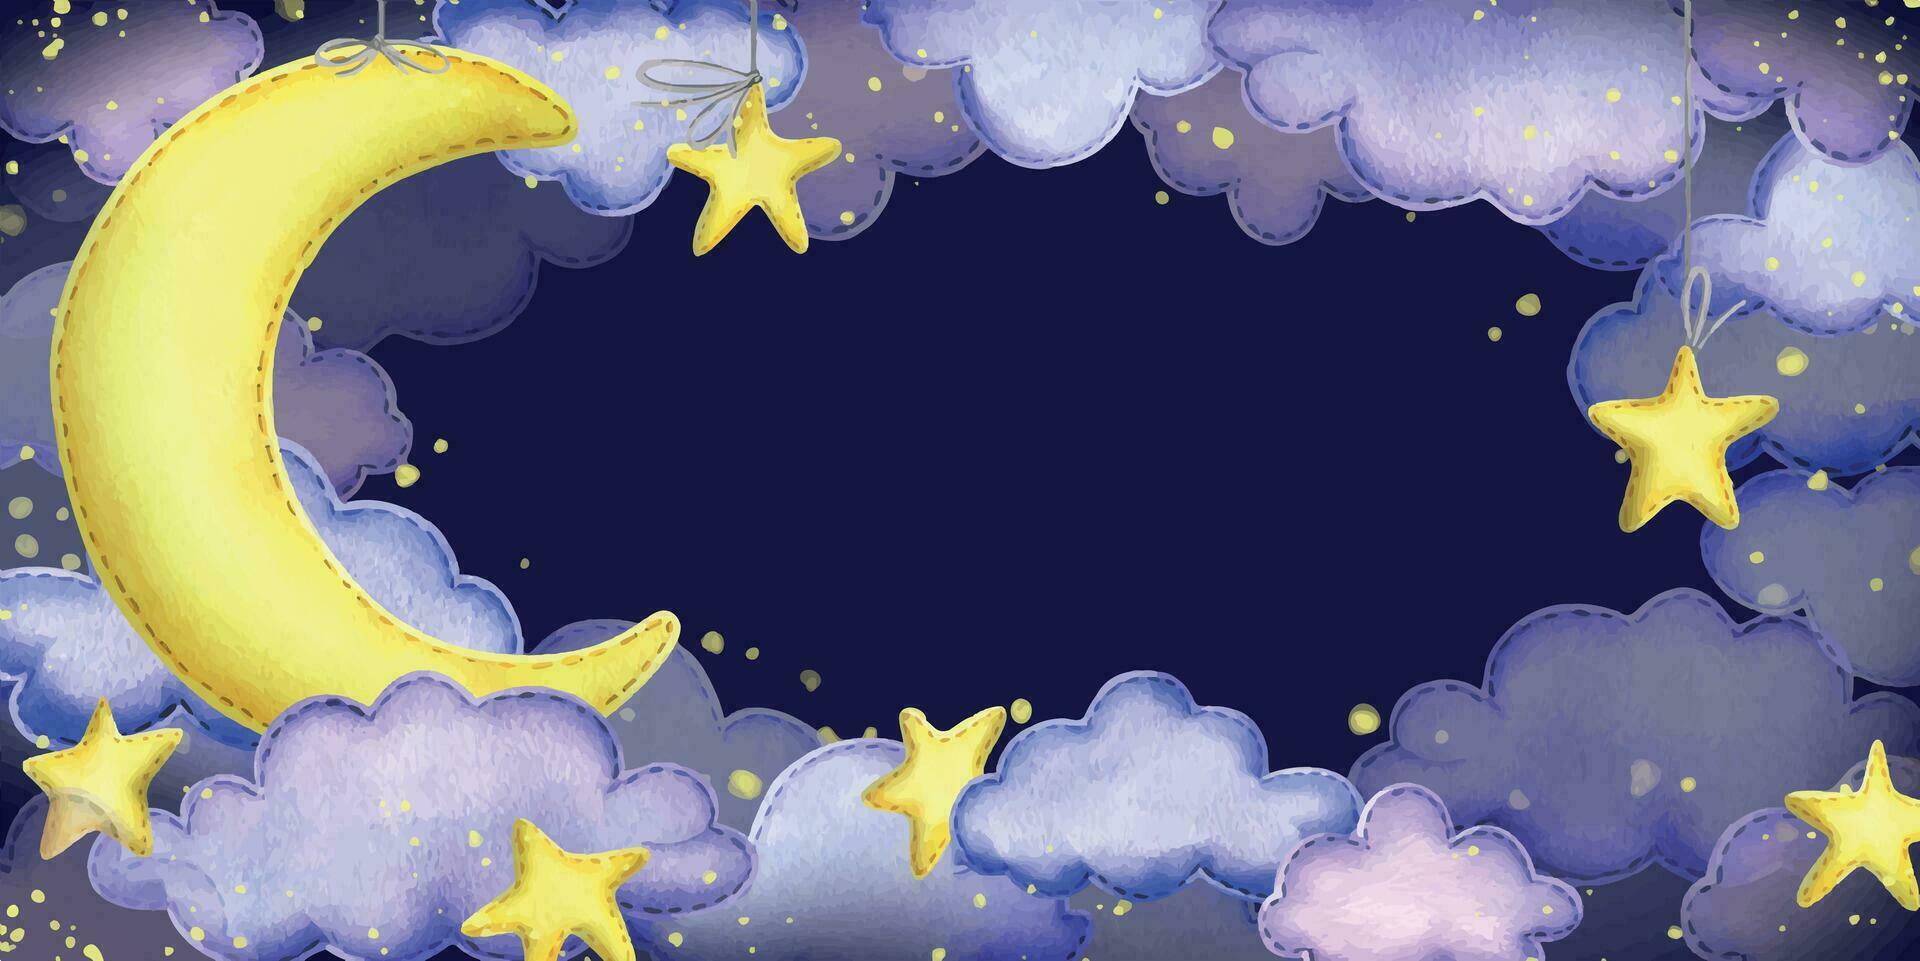 Nacht Himmel mit ein Gelb Mond, suspendiert Sterne und Wolken genäht von Stoff mit Faden Stiche. Hand gezeichnet Aquarell Illustration. horizontal Banner, rahmen, Vorlage auf ein dunkel Blau Hintergrund. vektor